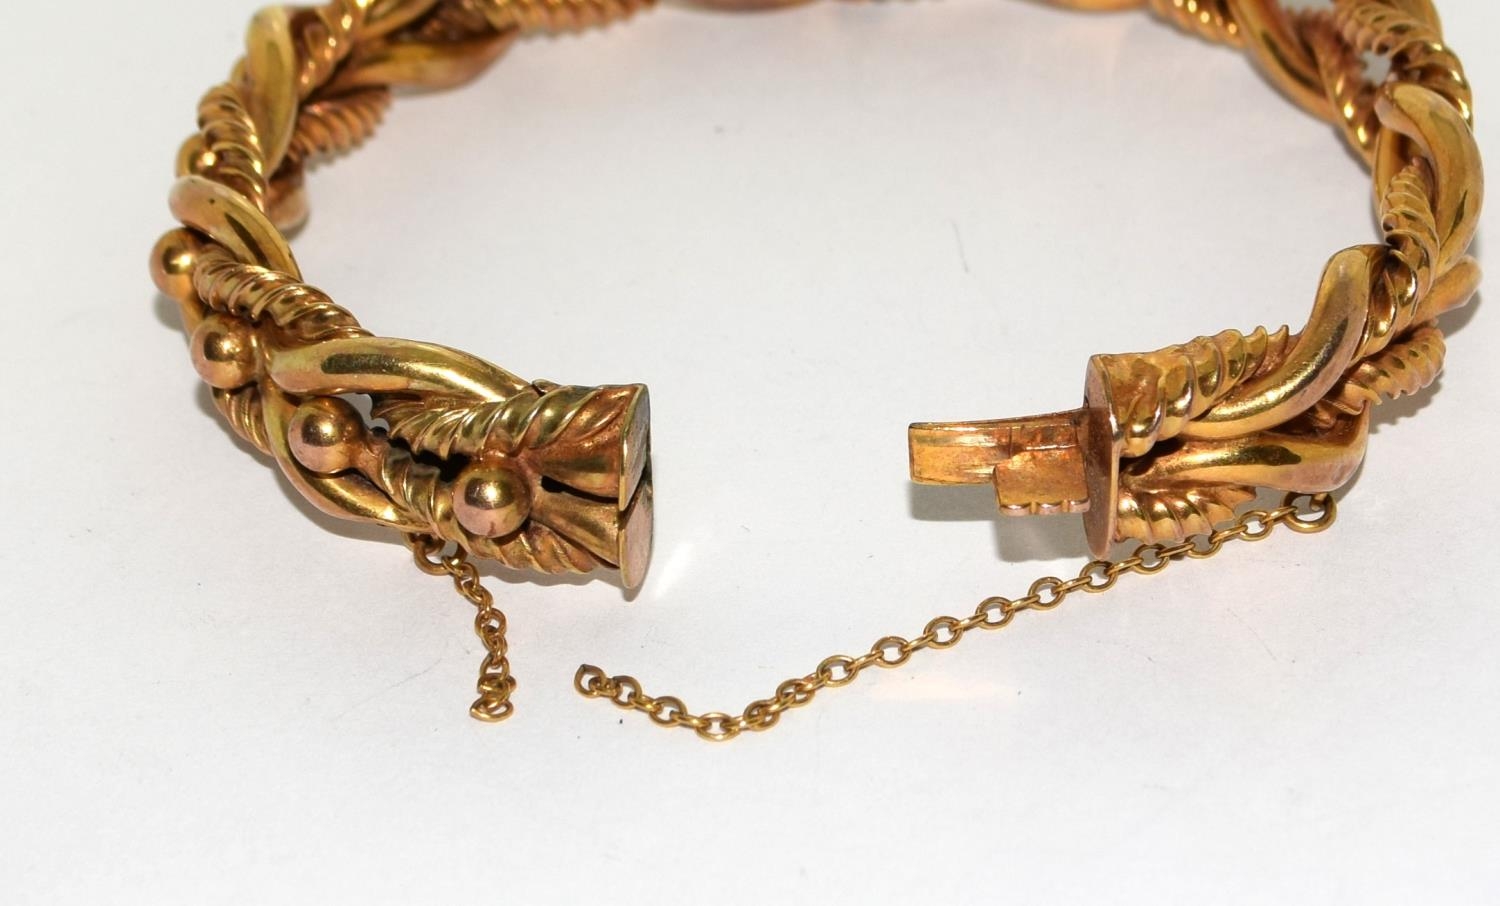 9ct gold double twist fancy bracelet 18.5g - Image 5 of 7